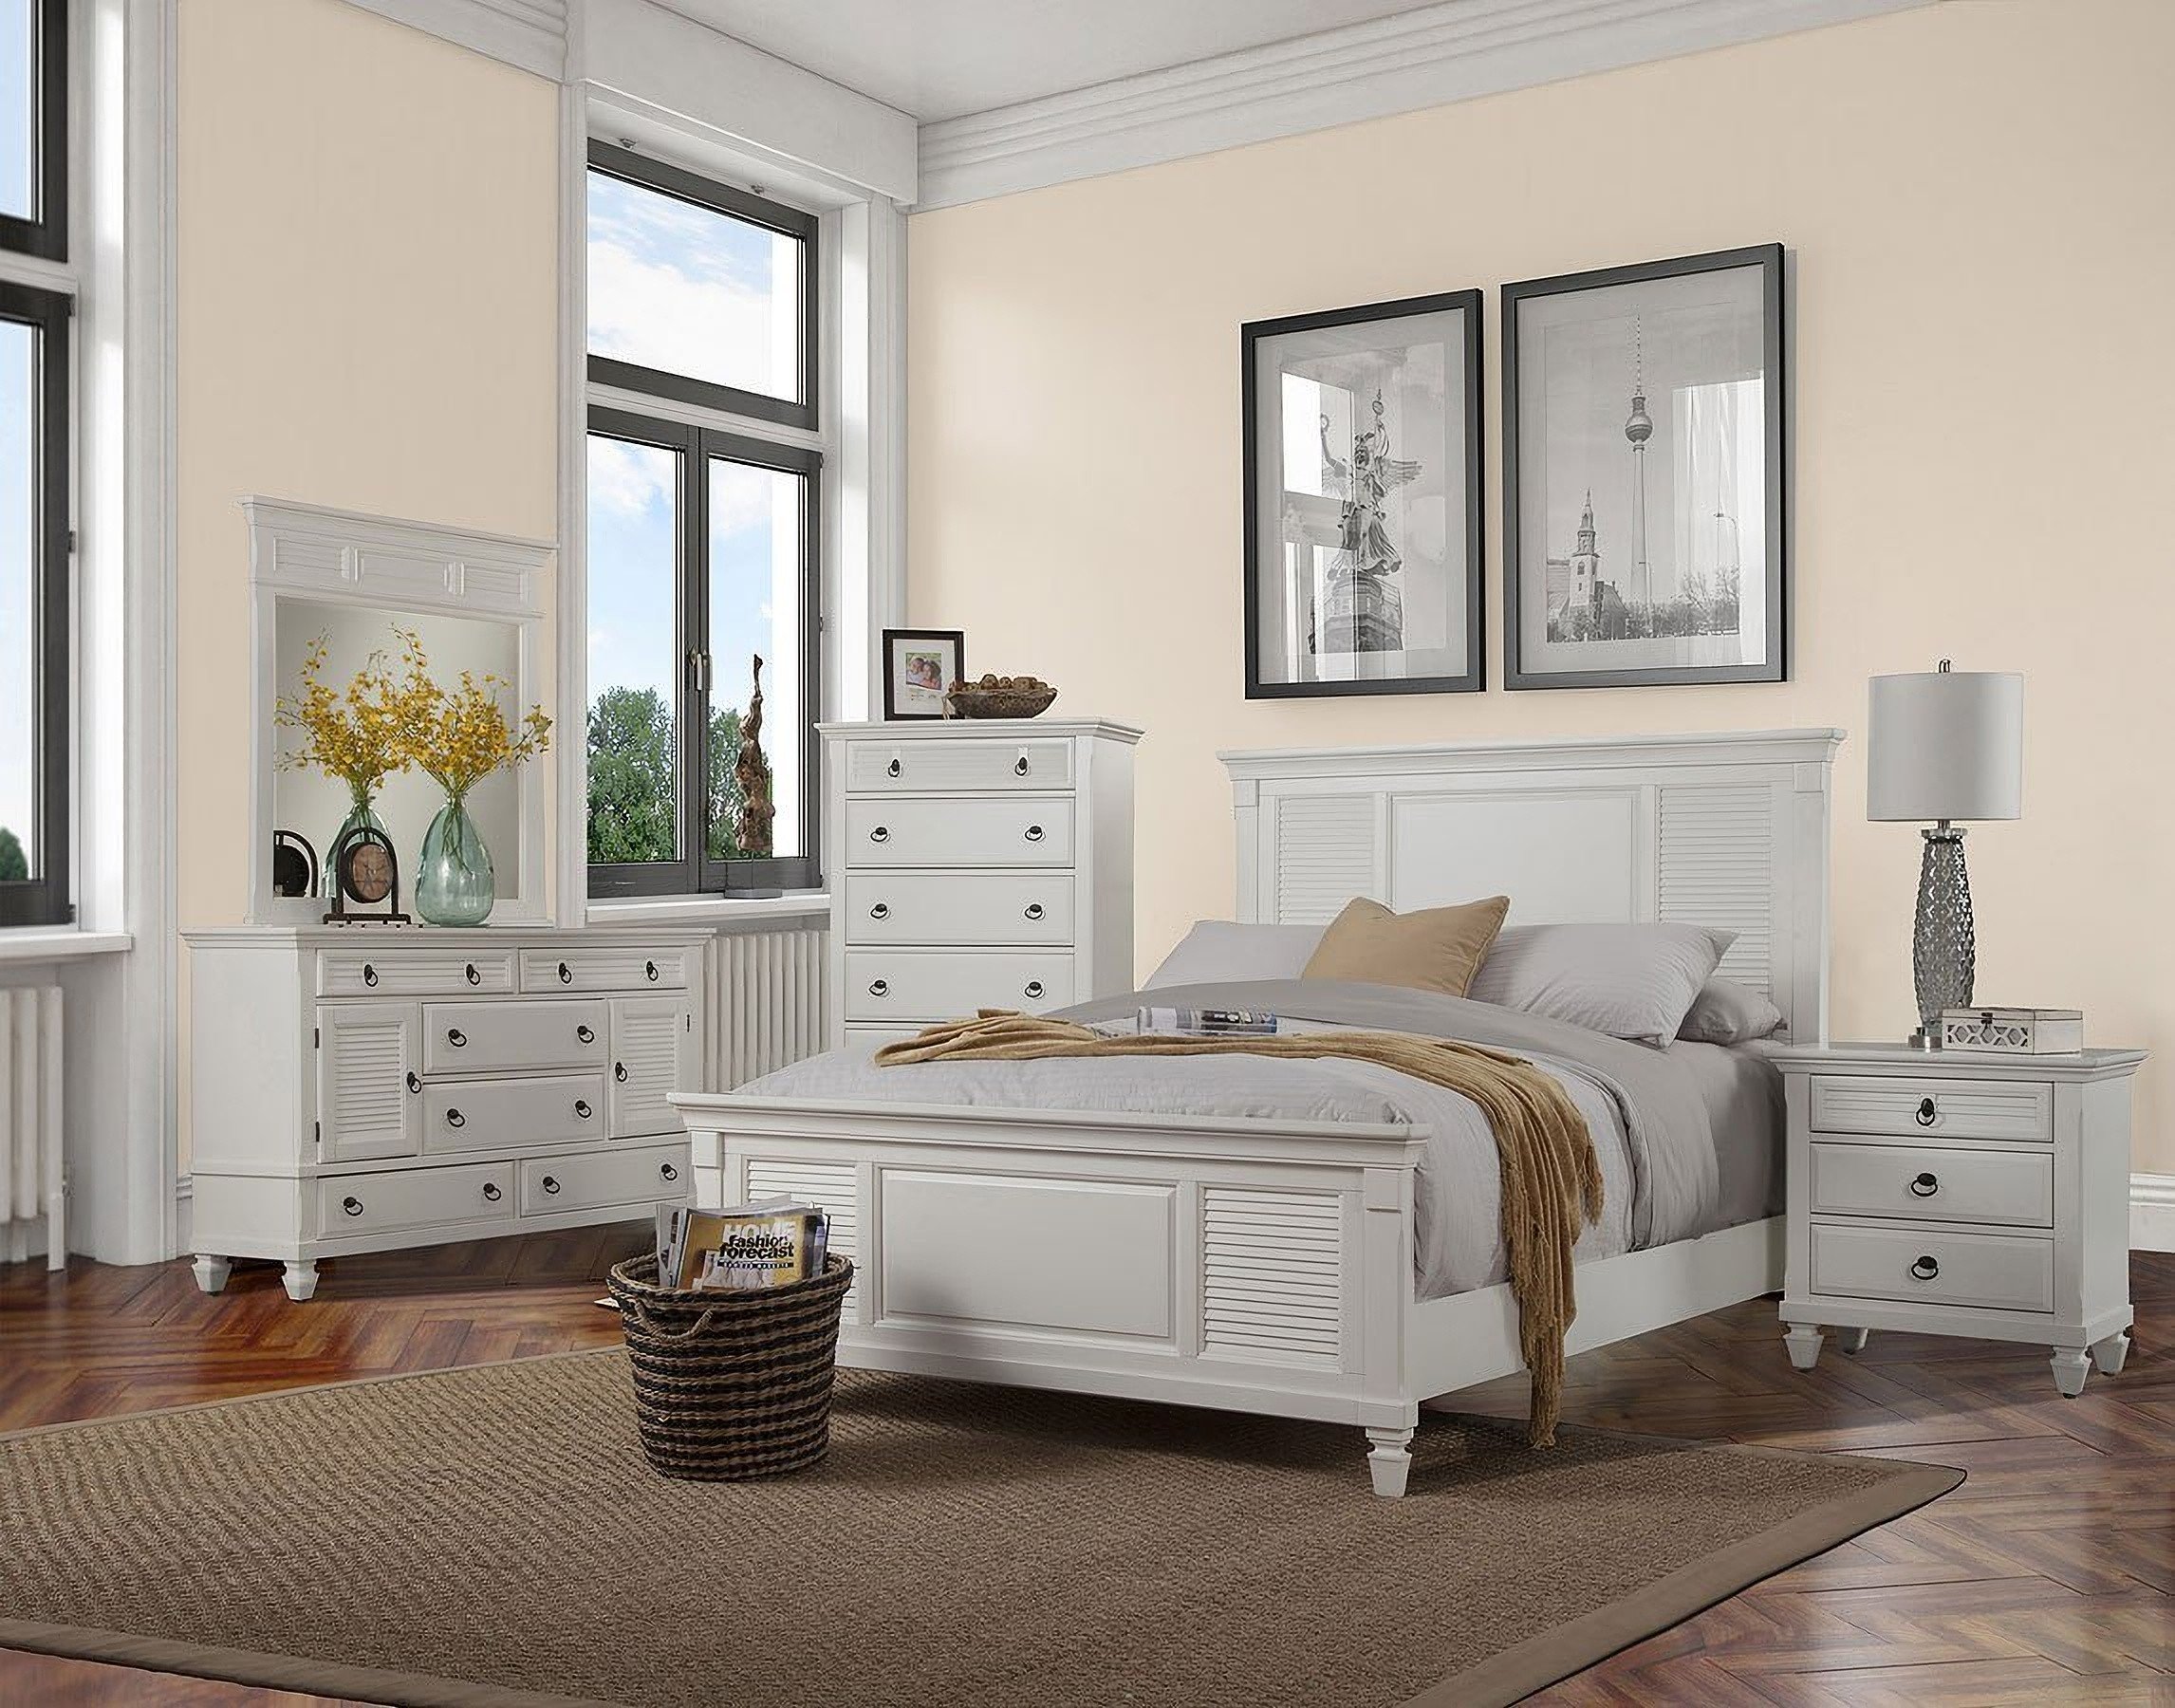 white shutter bedroom furniture